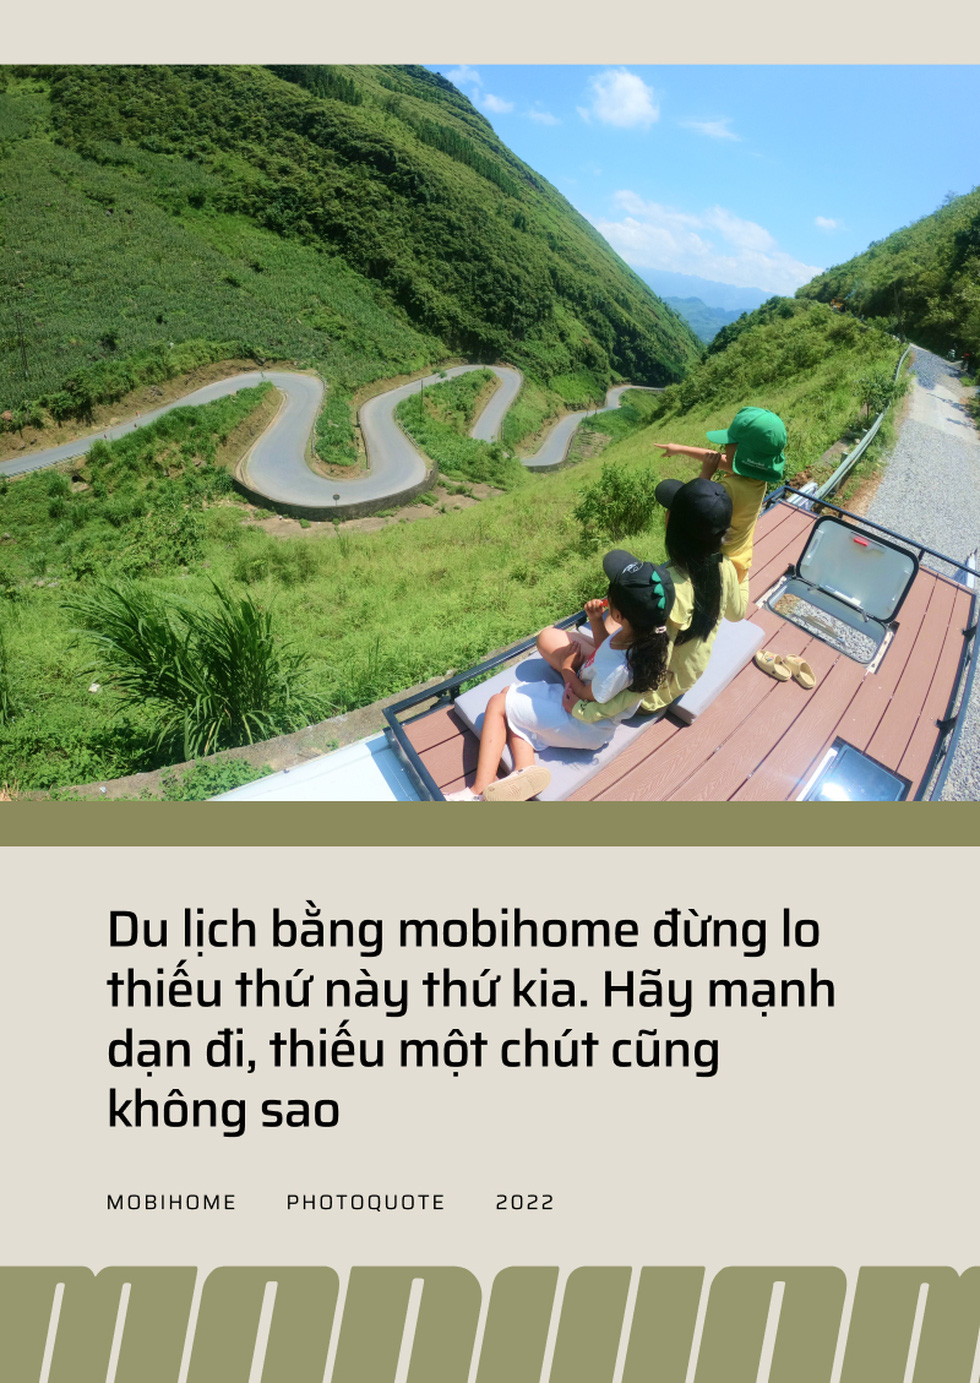 Lấy cảm hứng từ phim Mỹ, gia đình 8X đi khắp Việt Nam bằng mobihome - Ảnh 3.